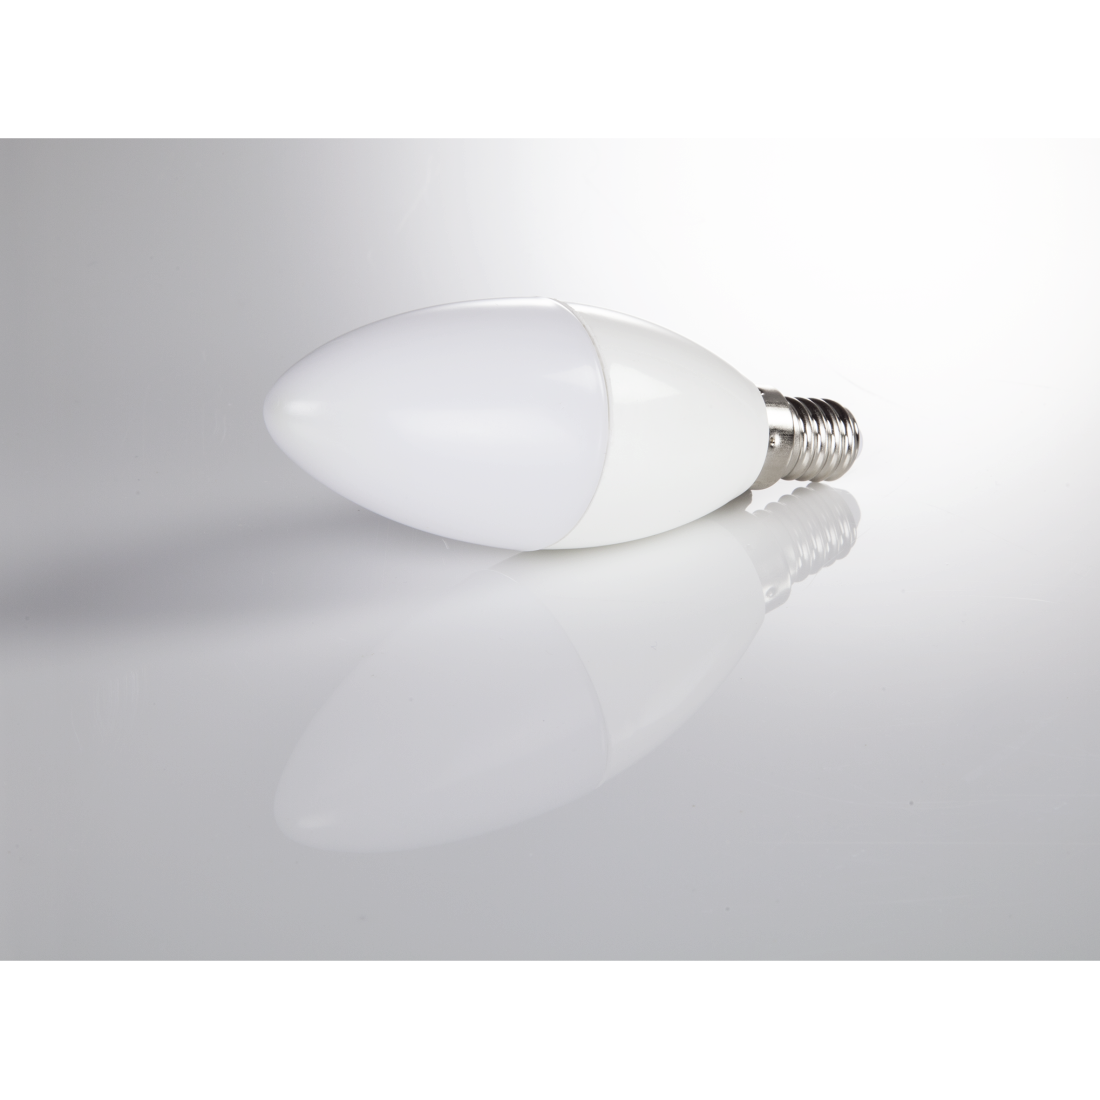 abx3 High-Res Image 3 - Xavax, Ampoule LED, E14, 470lm rempl. ampoule bougie 40 W, blanc neutre